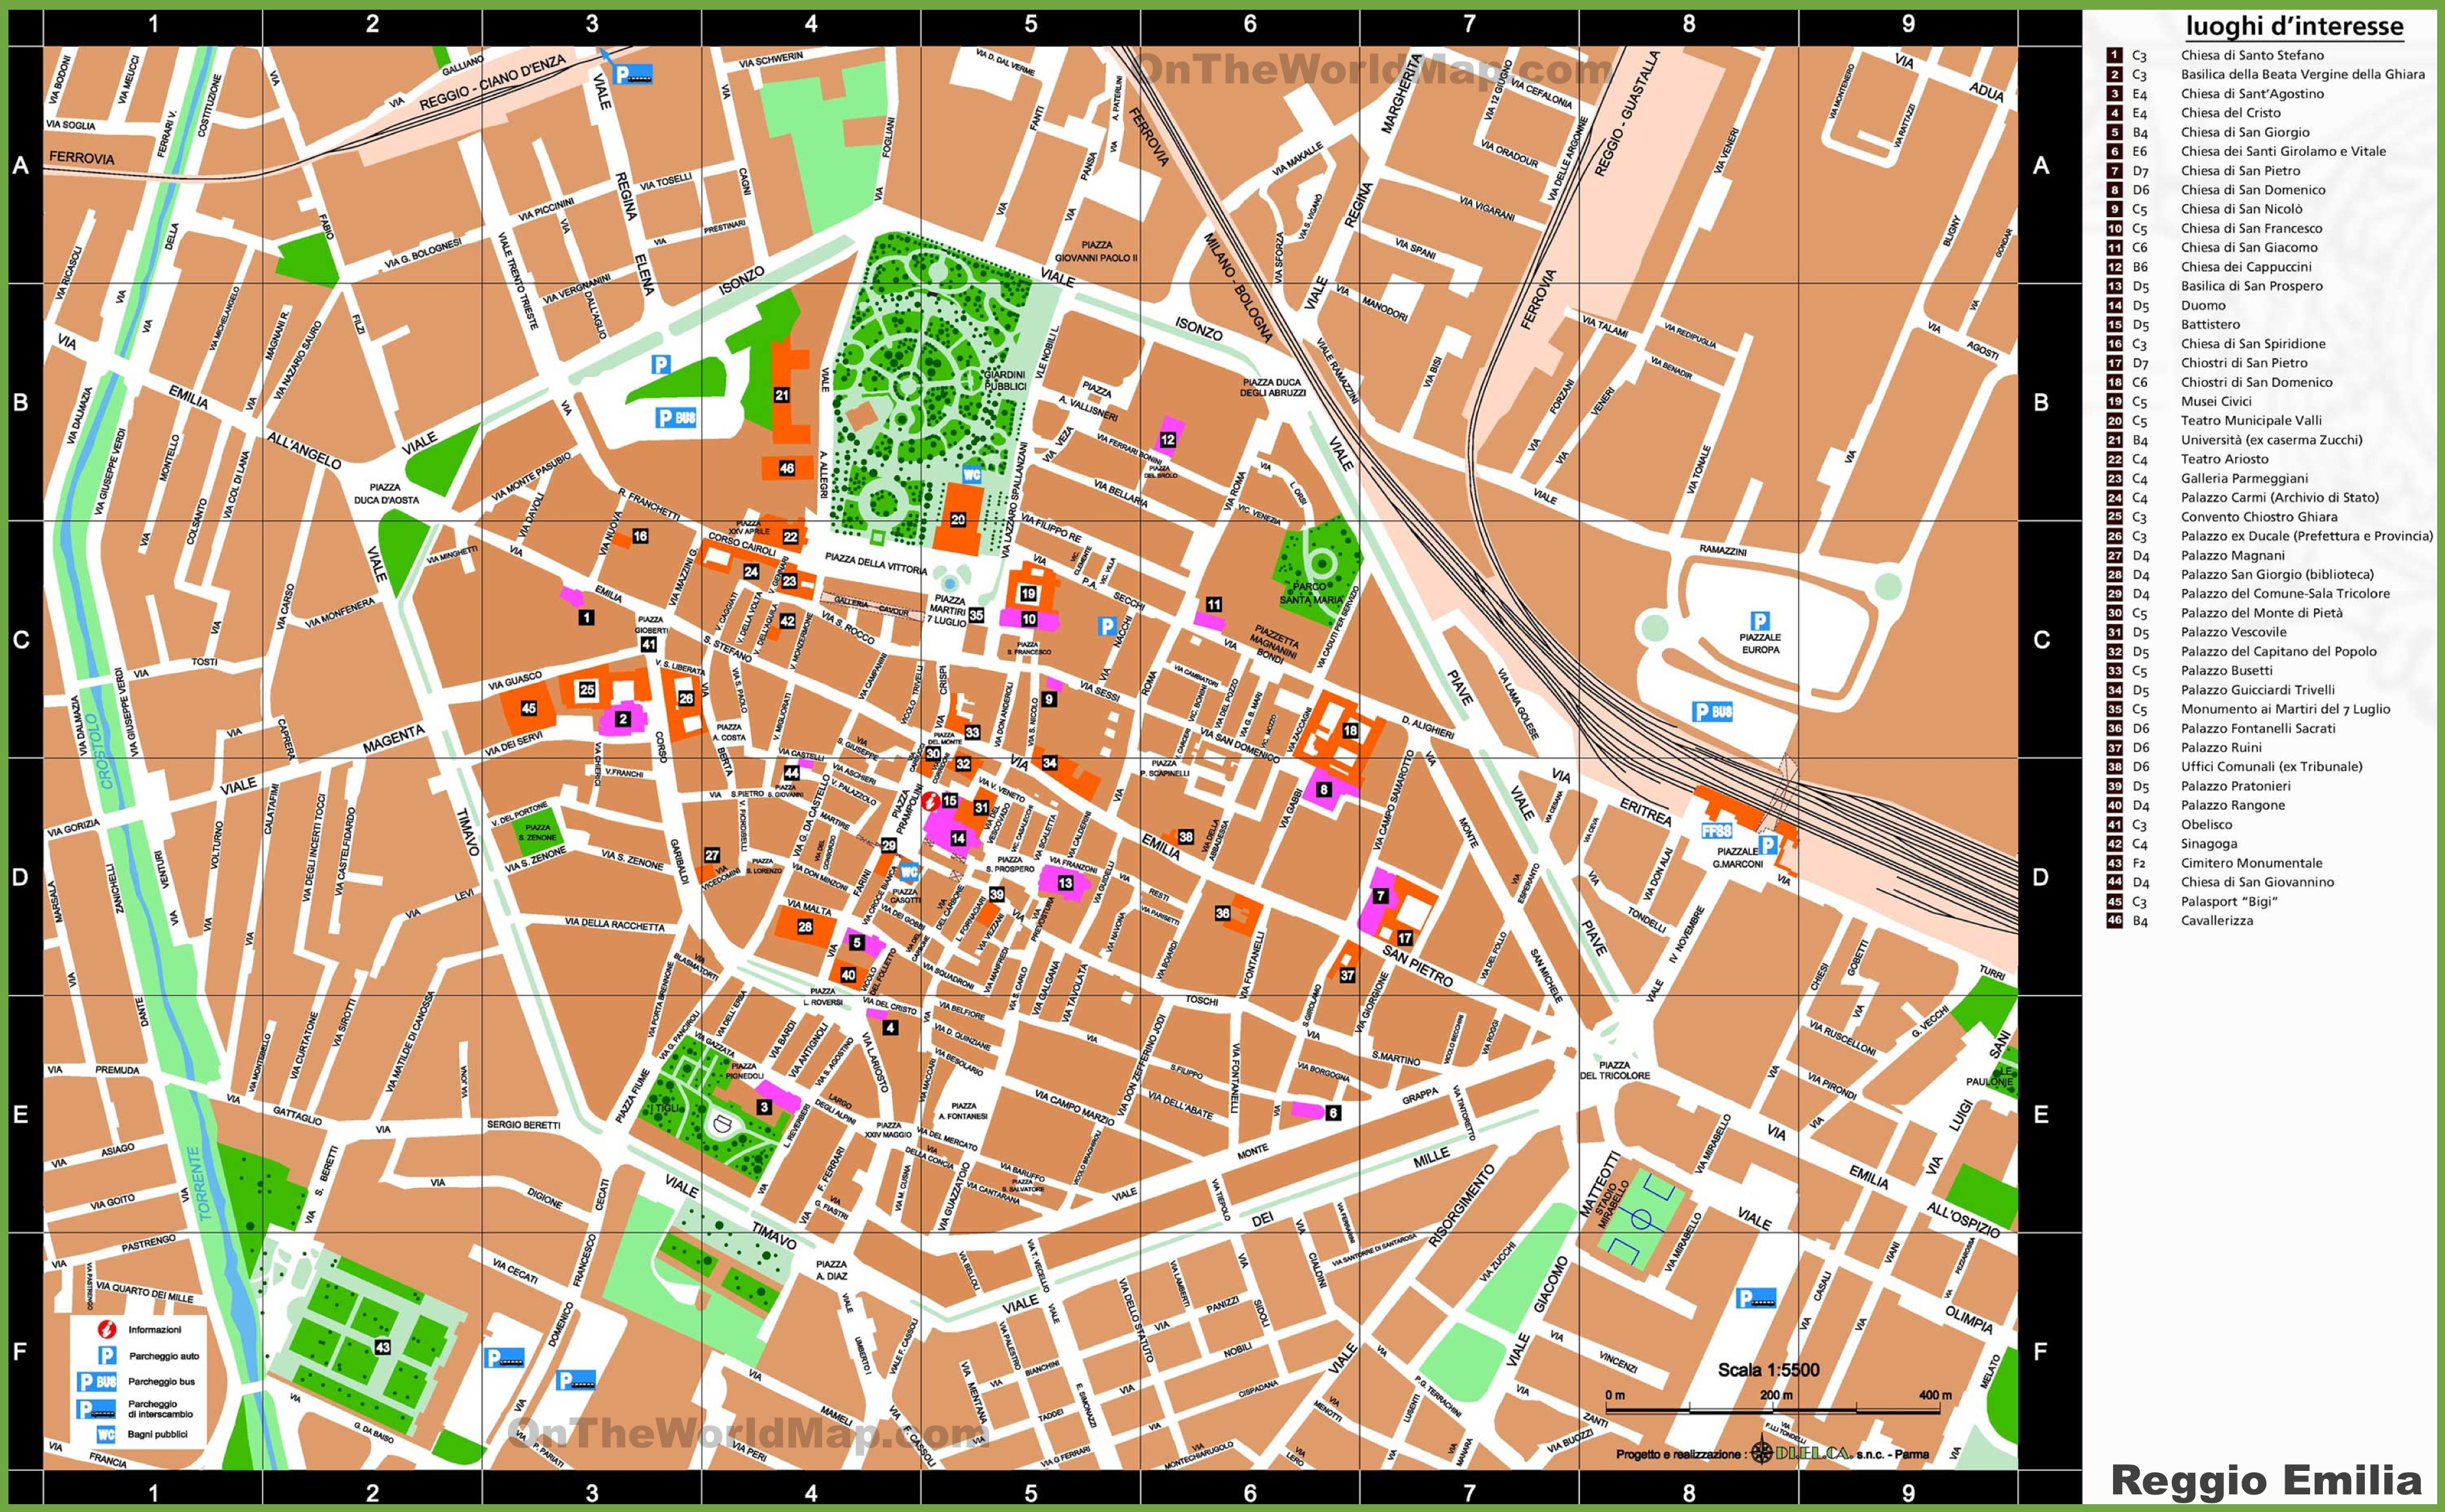 Reggio Emilia Sightseeing Map